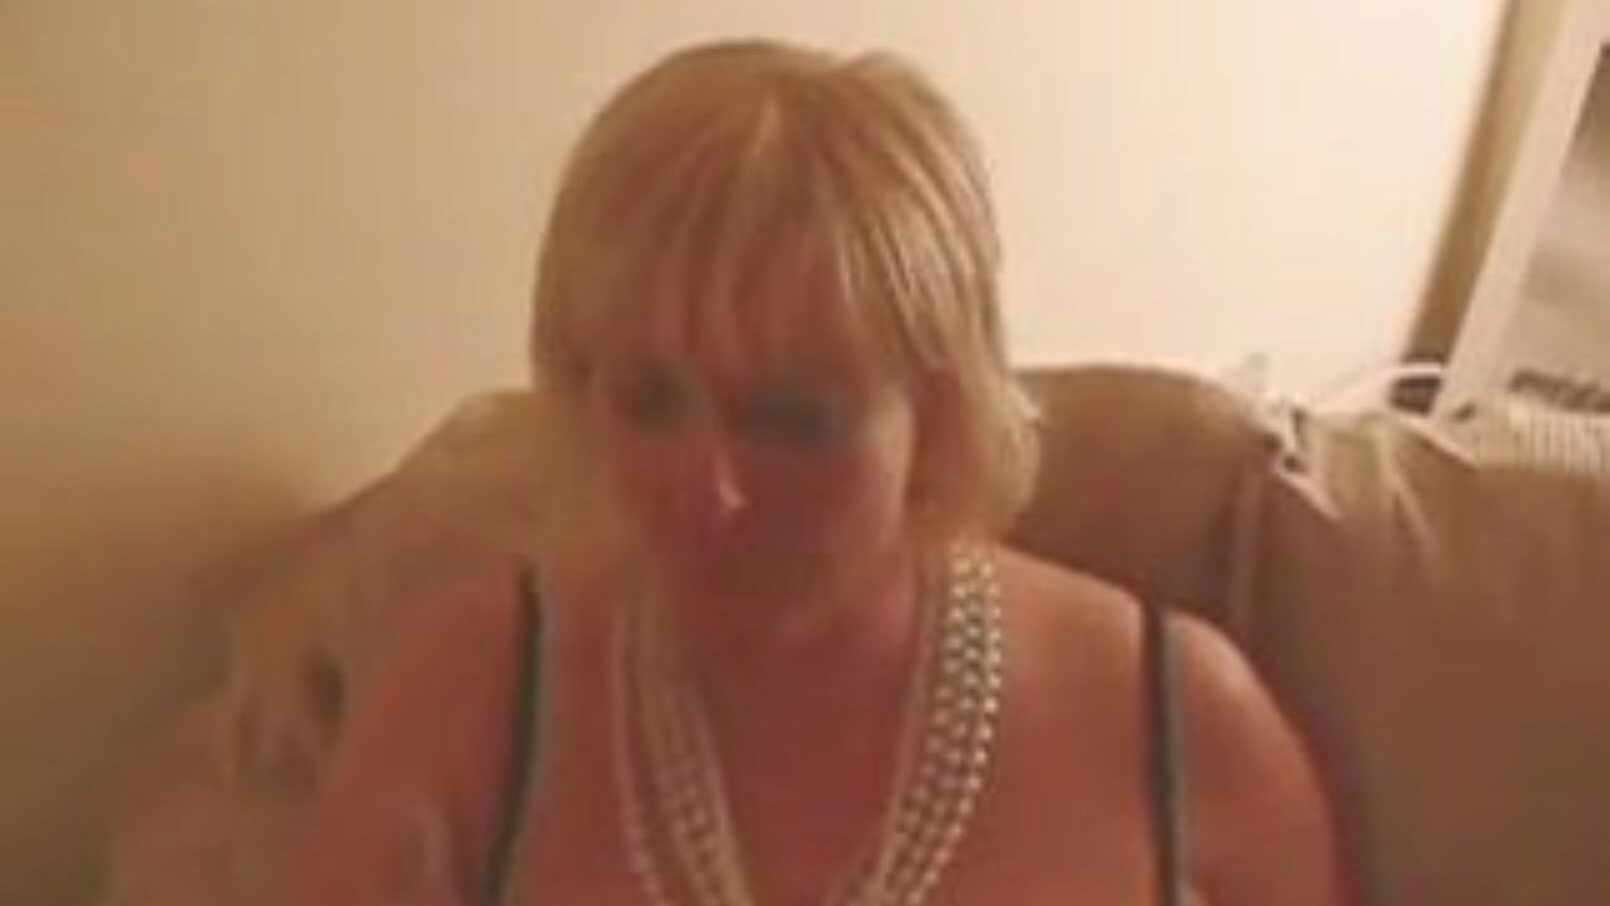 špinavé děvky sdílení 12 zátěží spunk gokkun stylu ... sledovat špinavé děvky sdílení 12 zátěží spunk gokkun stylu filmové scény na xhamster - konečná databáze bezplatných britských závislých na porno porno videa